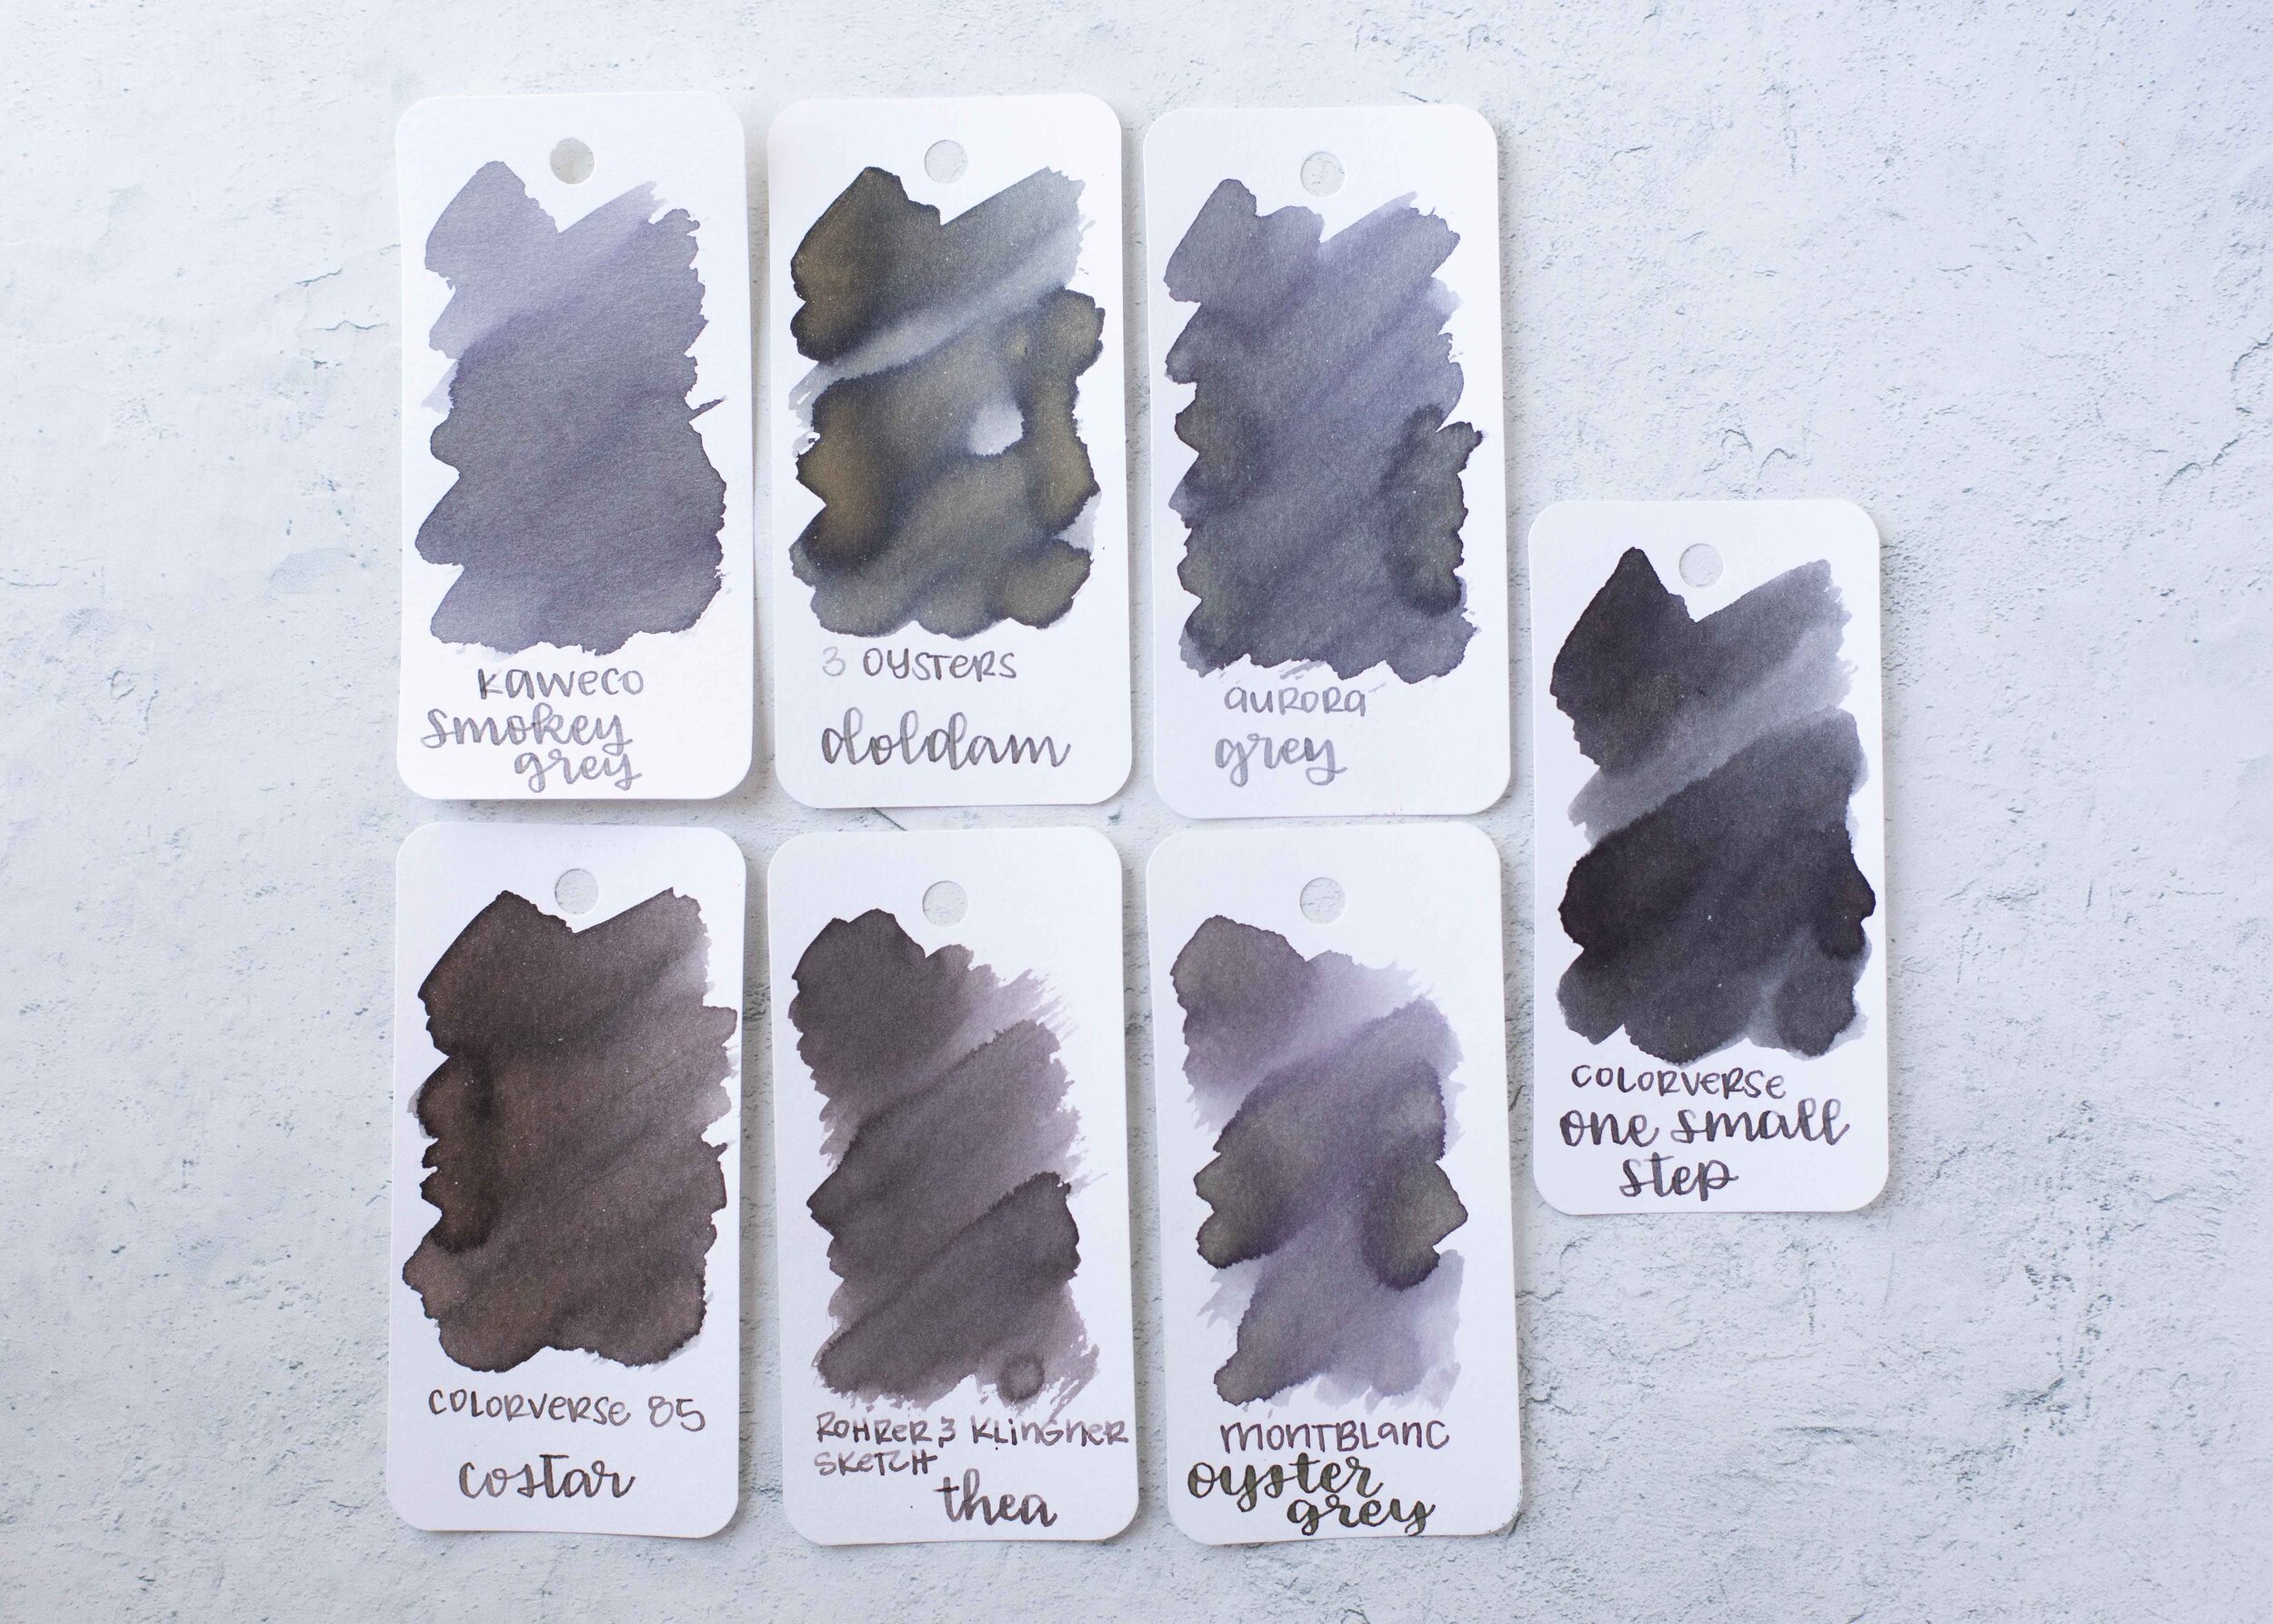 Kaweco Smokey Grey - Ink Cartridges